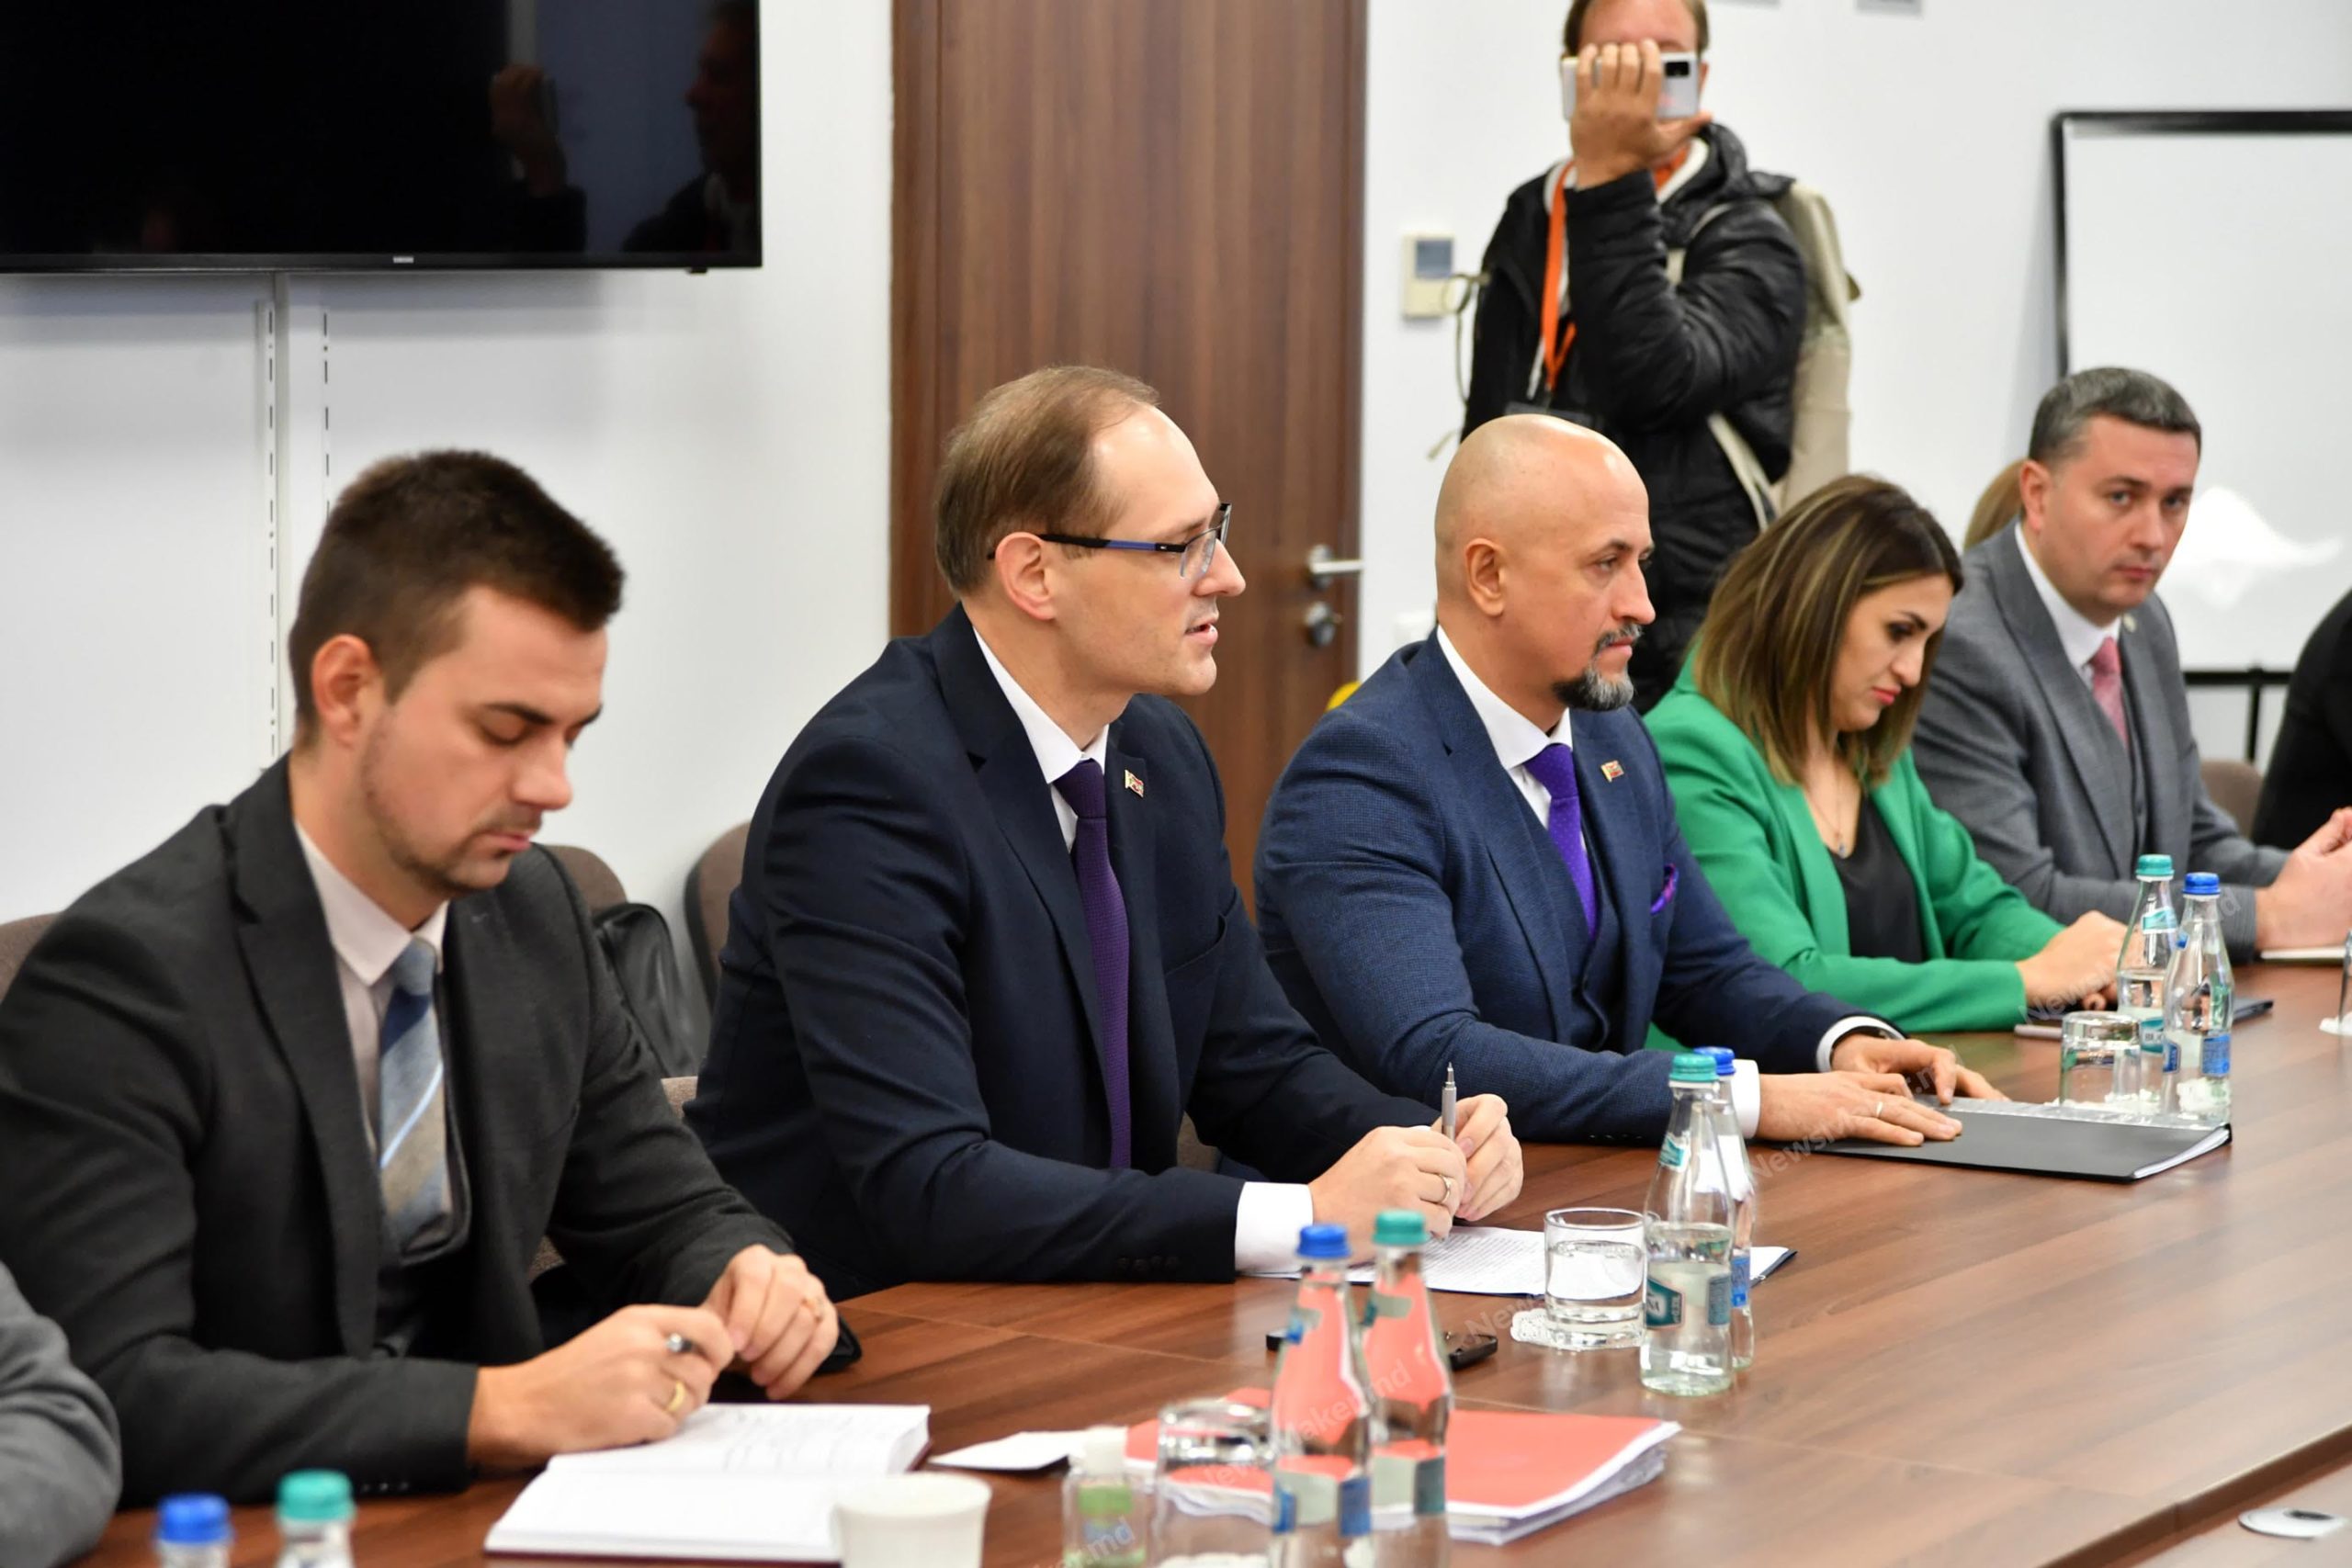 (ФОТО) Серебрян рассказал о встрече Кишинева и Тирасполя. Затронули и тему осужденного за пост об Украине Плешканова